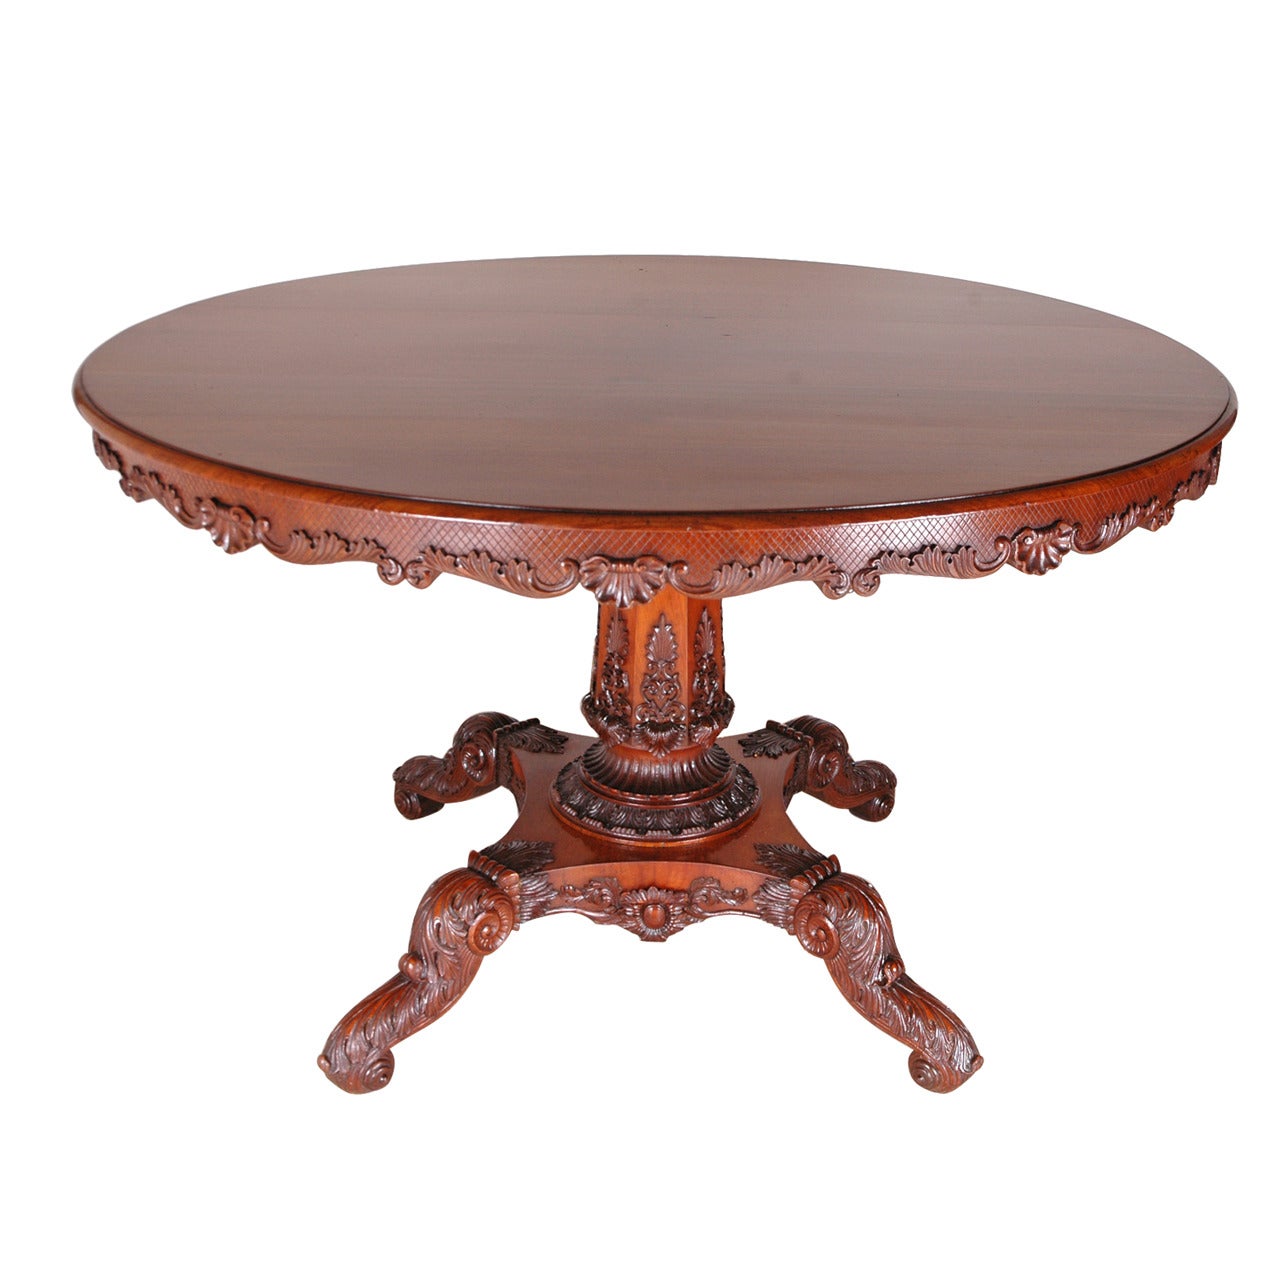  48" Round English Regency Dining Table in Mahogany with Carved Center Pedestal (table à manger ronde de style Régence anglaise en acajou avec piédestal central sculpté)